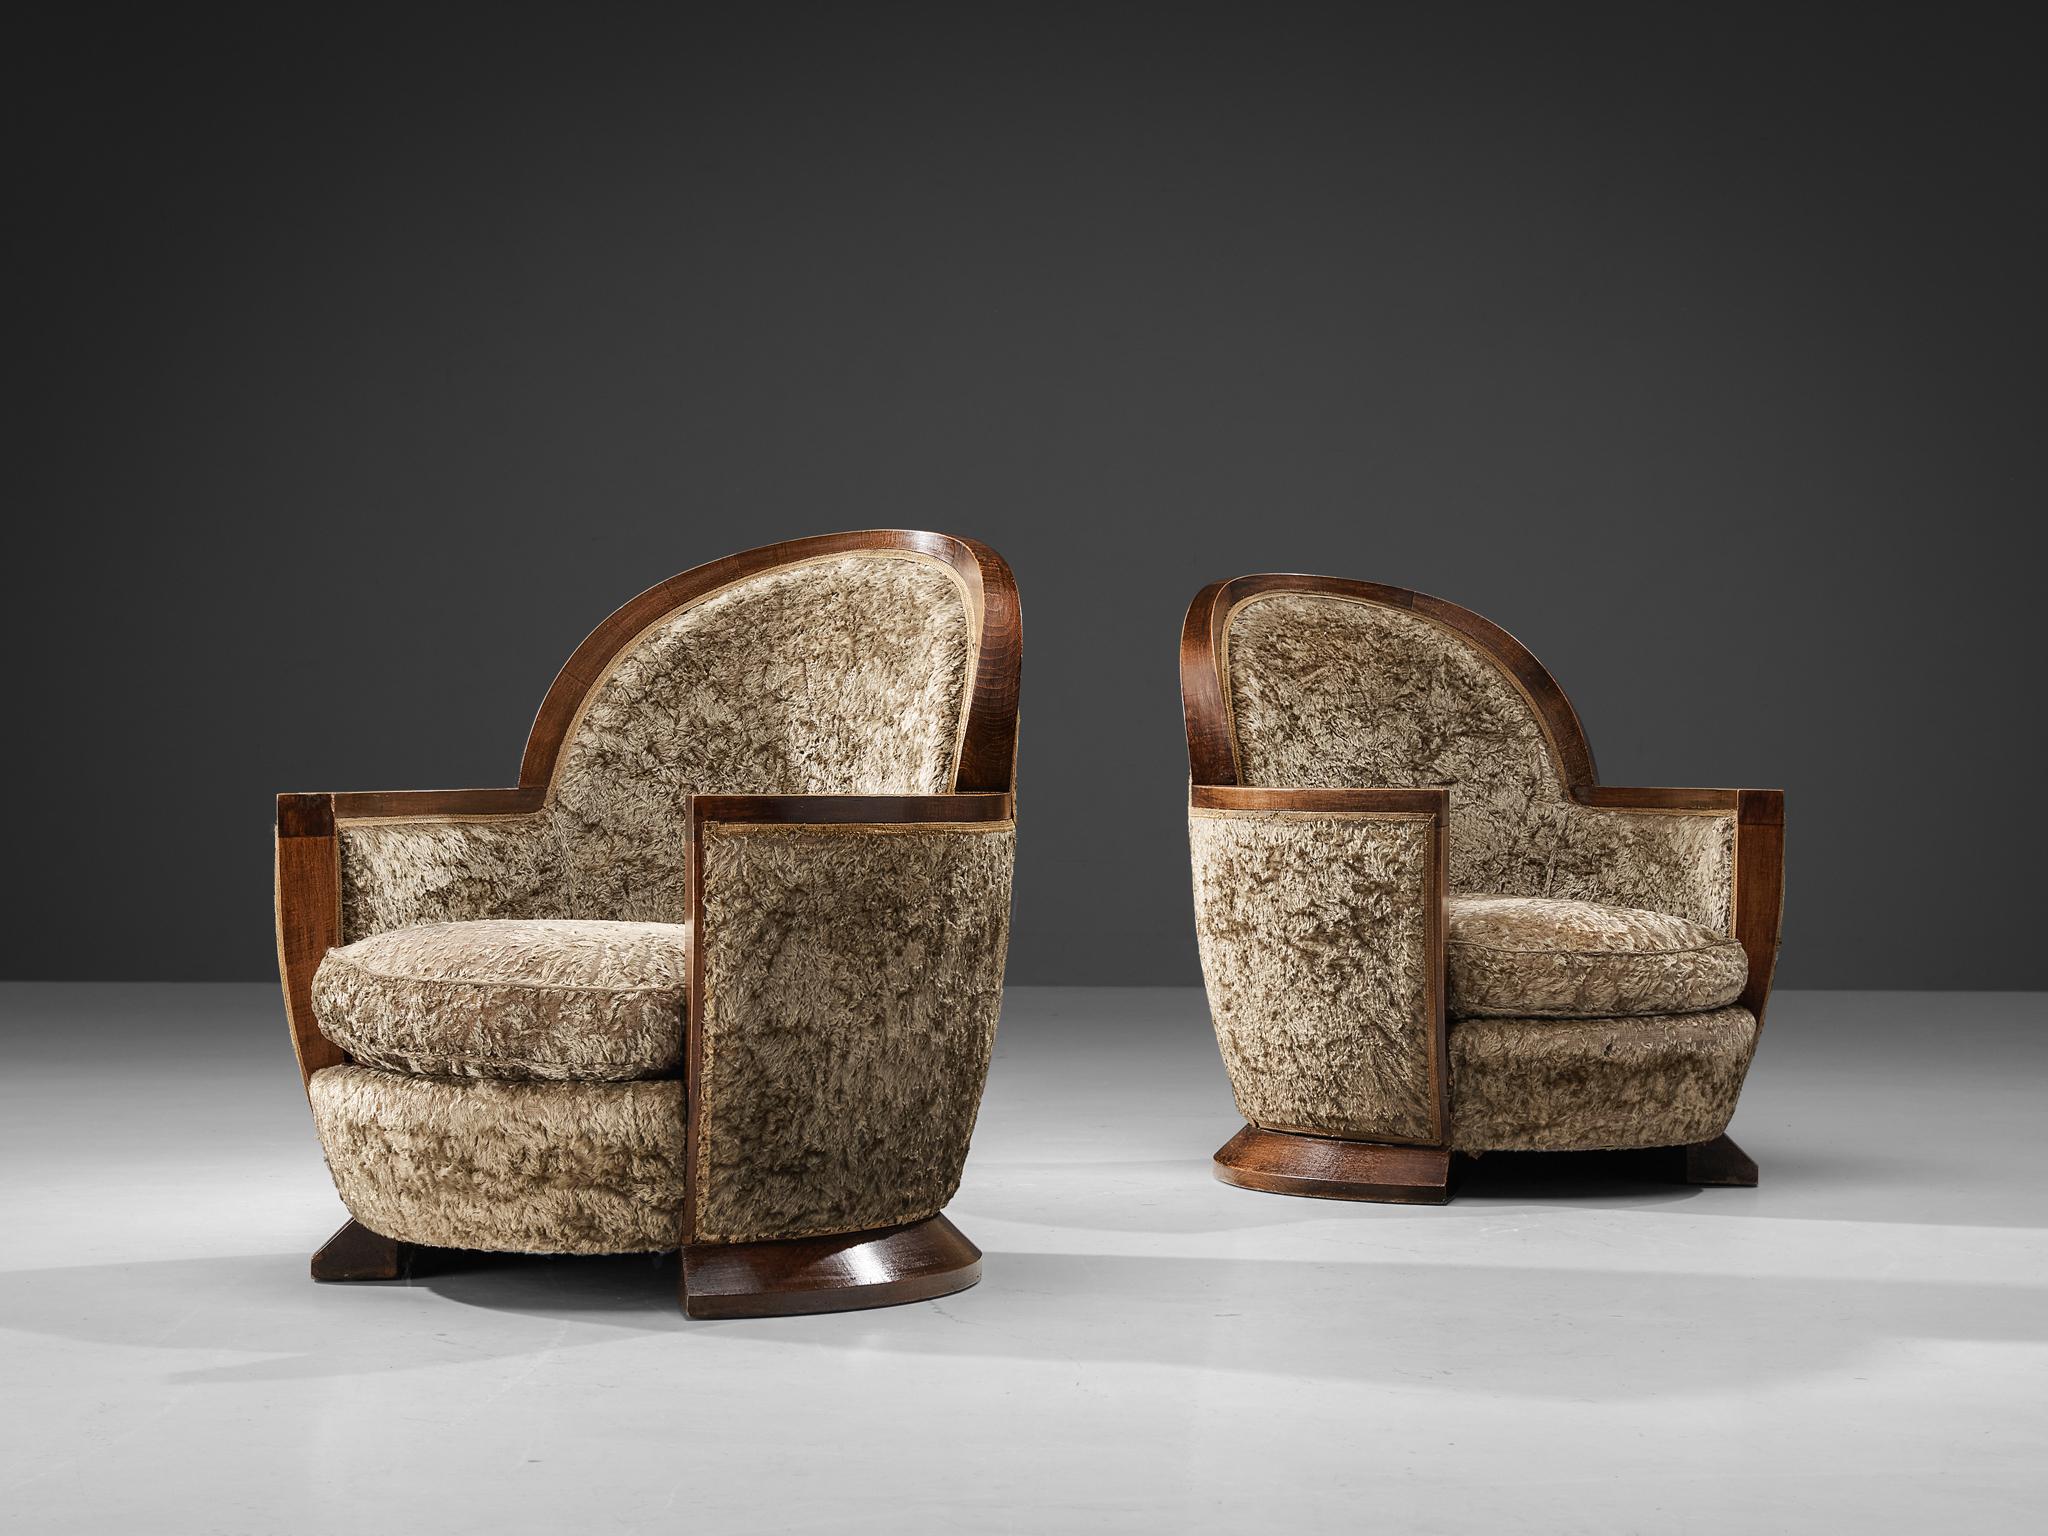 Gabriel Englinger, Paar Sessel, Holz, langfloriger Samtbezug, Frankreich, 1928.

Dieser seltene Art-Déco-Sessel, der 1928 von dem angesehenen Designer Gabriel Englinger entworfen wurde, verkörpert den Luxus und die Raffinesse dieser Epoche. Der